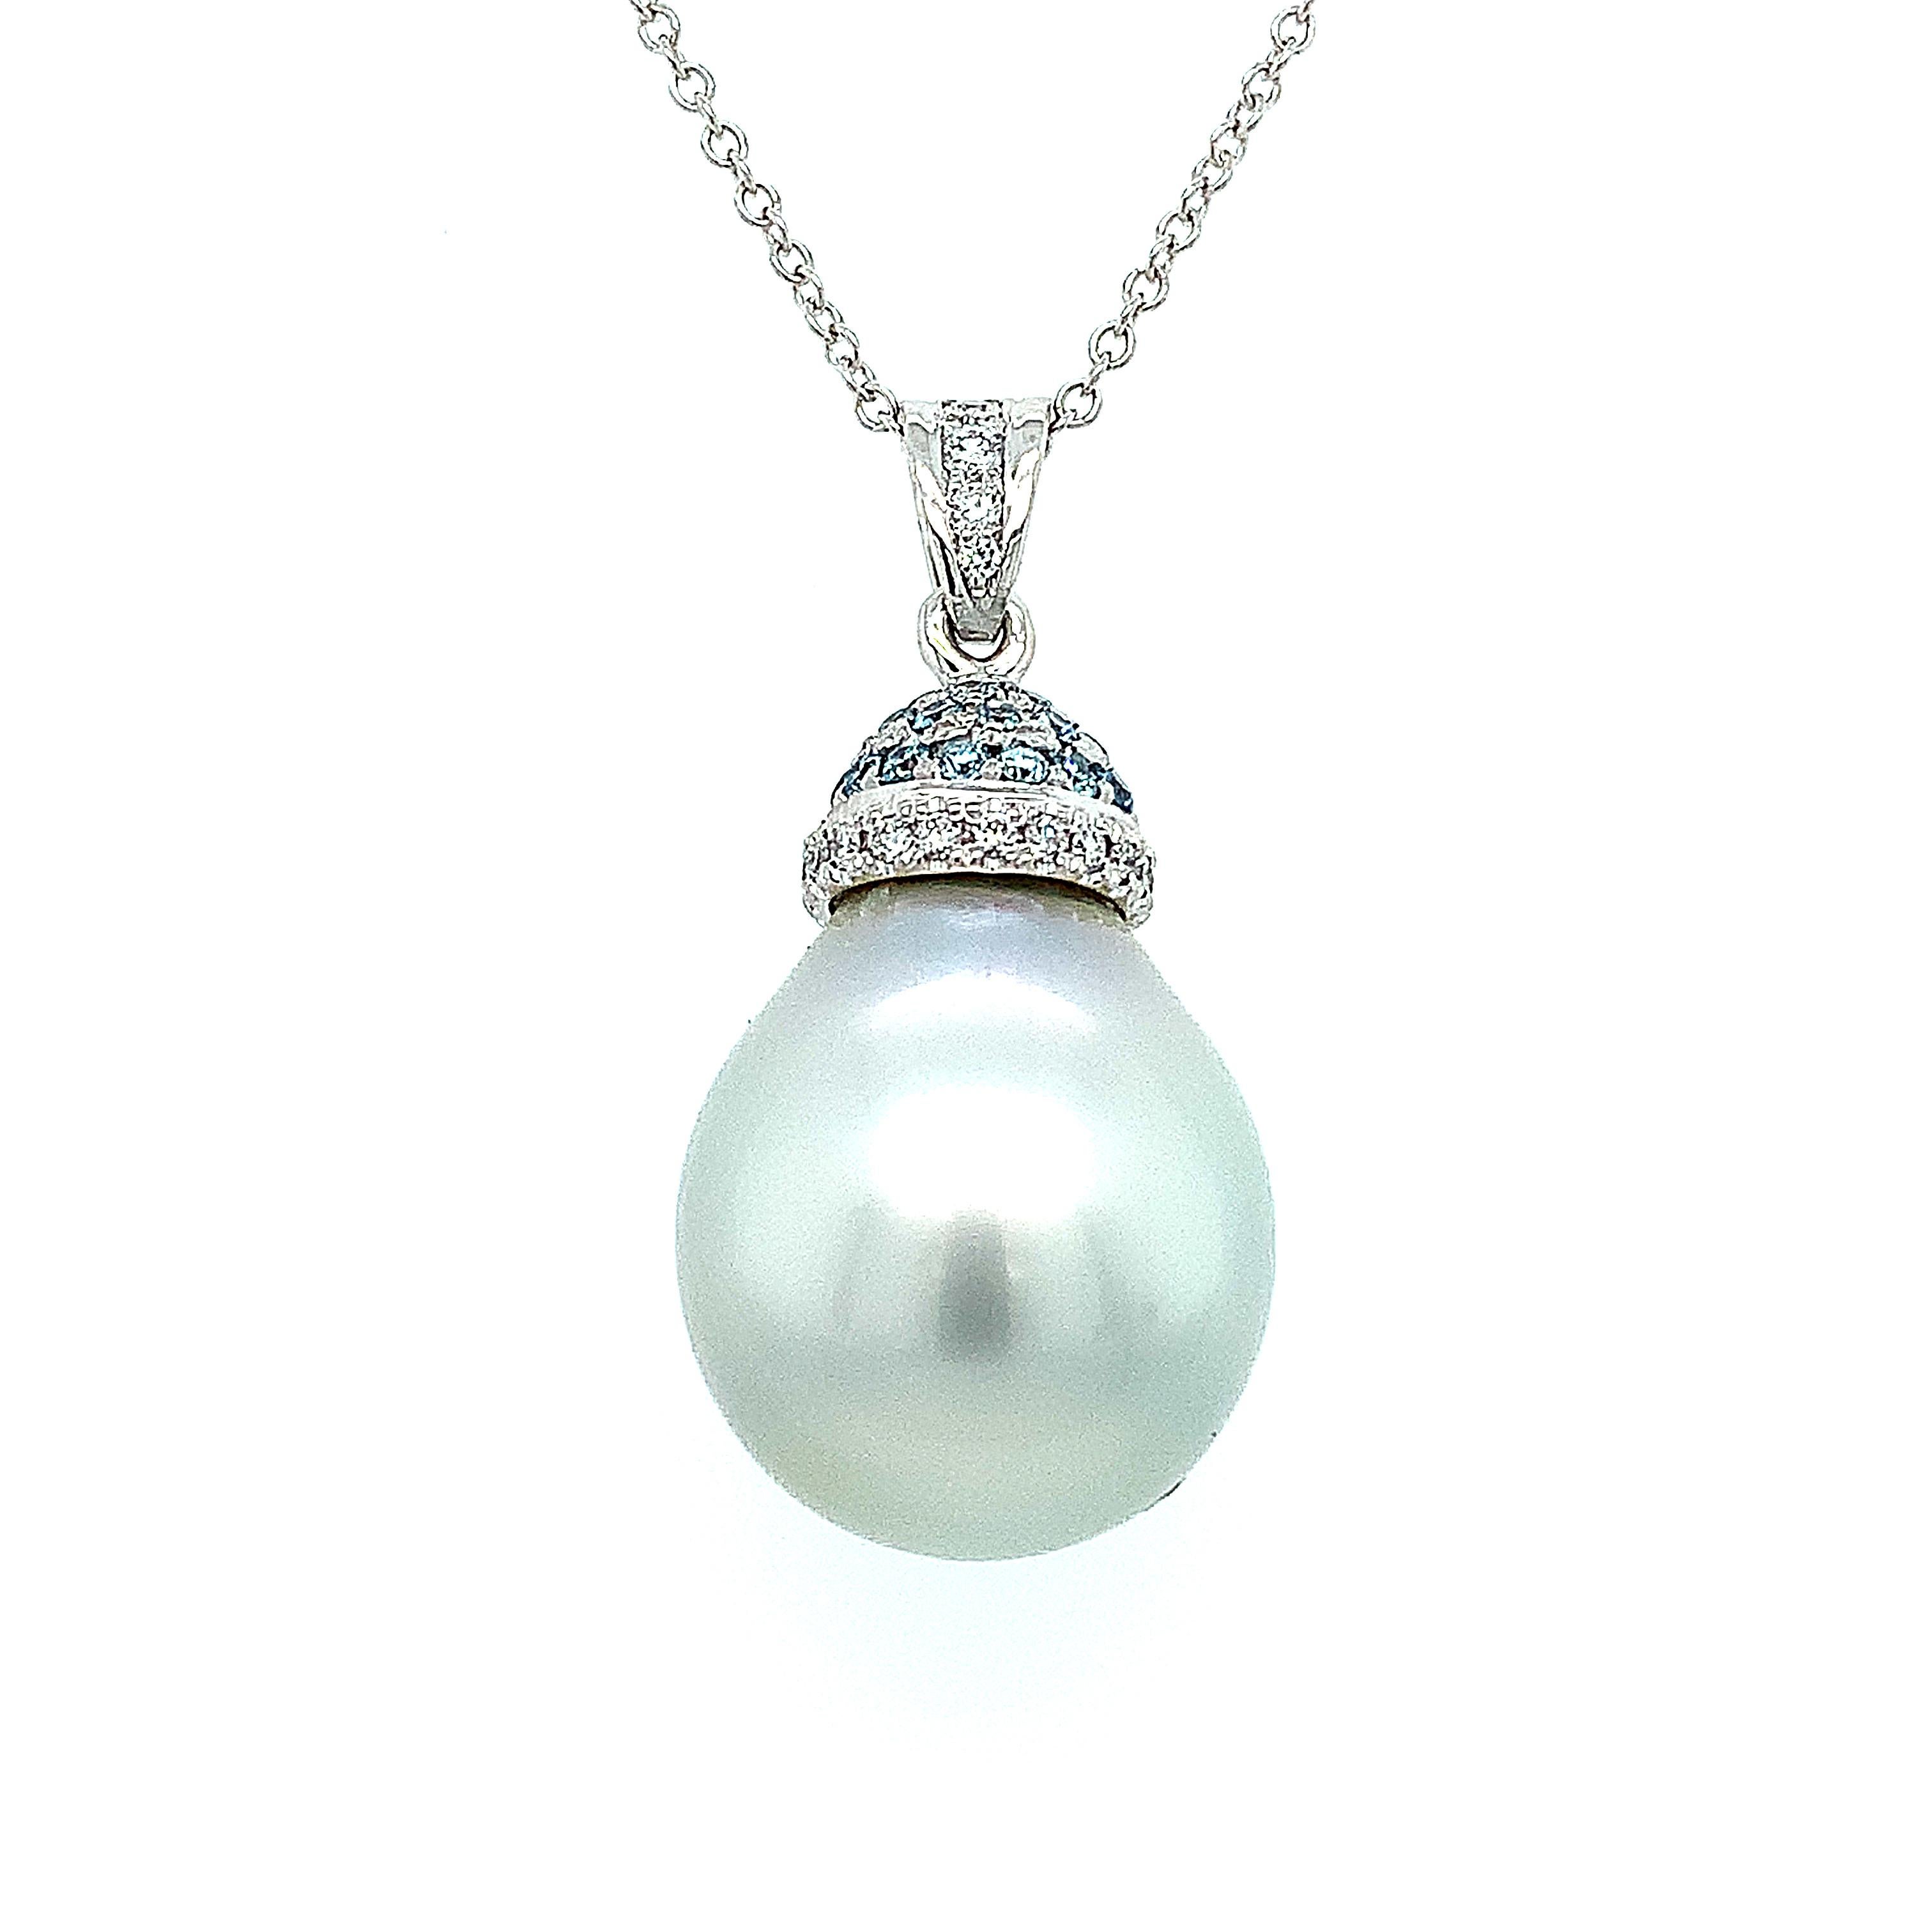 Pendentif art déco en forme de poire en or blanc 18k, perle de Tahiti et diamants
Perle de culture de Tahiti en forme de poire de couleur bleu gris clair mesurant environ 22x16mm avec des diamants de taille ronde d'un poids total de 0.78ct couleur F